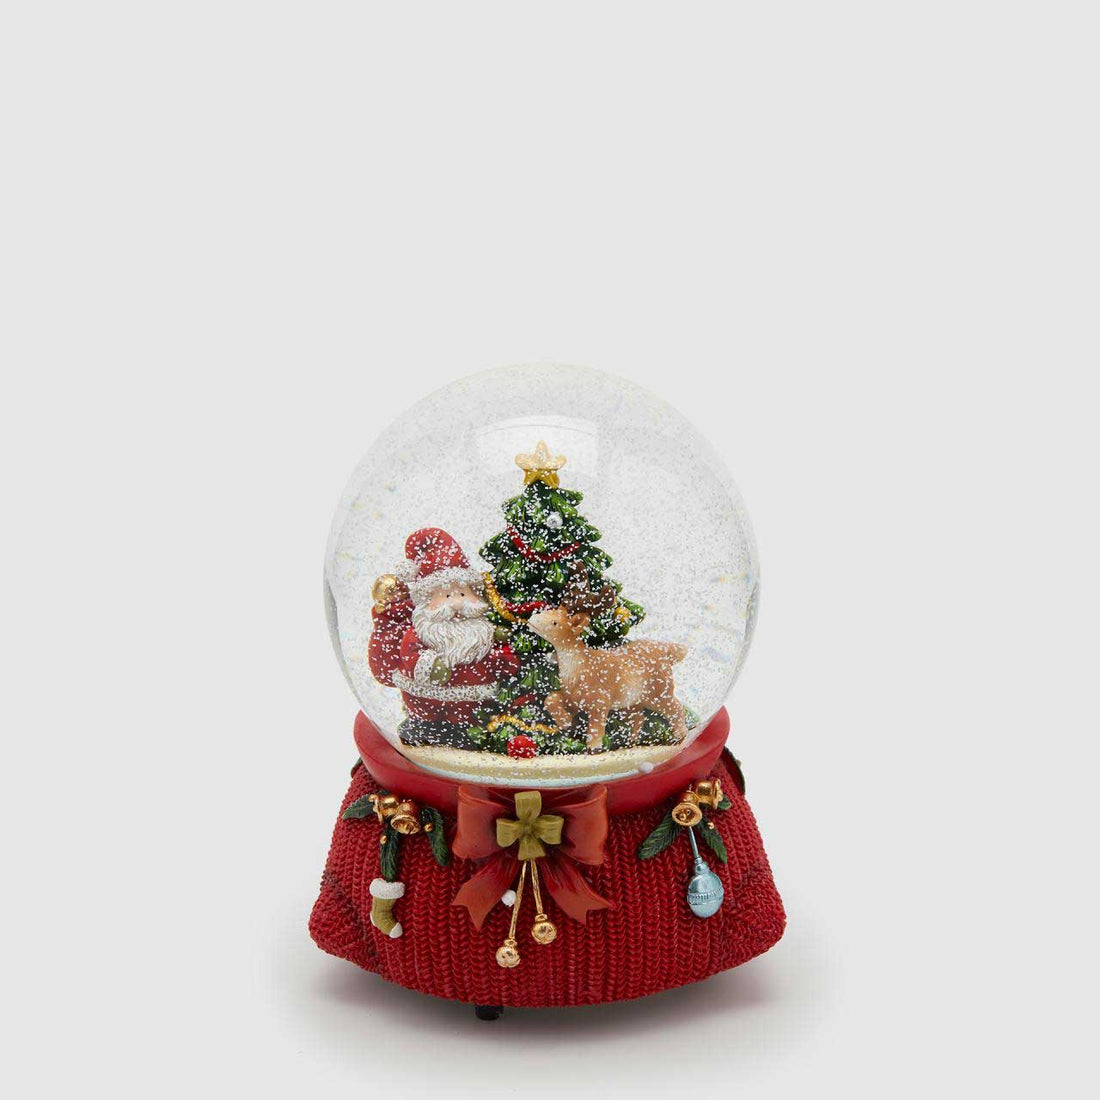 EDG Palla Globo di Neve con Babbo Natale Pino c/Carillon 15cm Decorazione